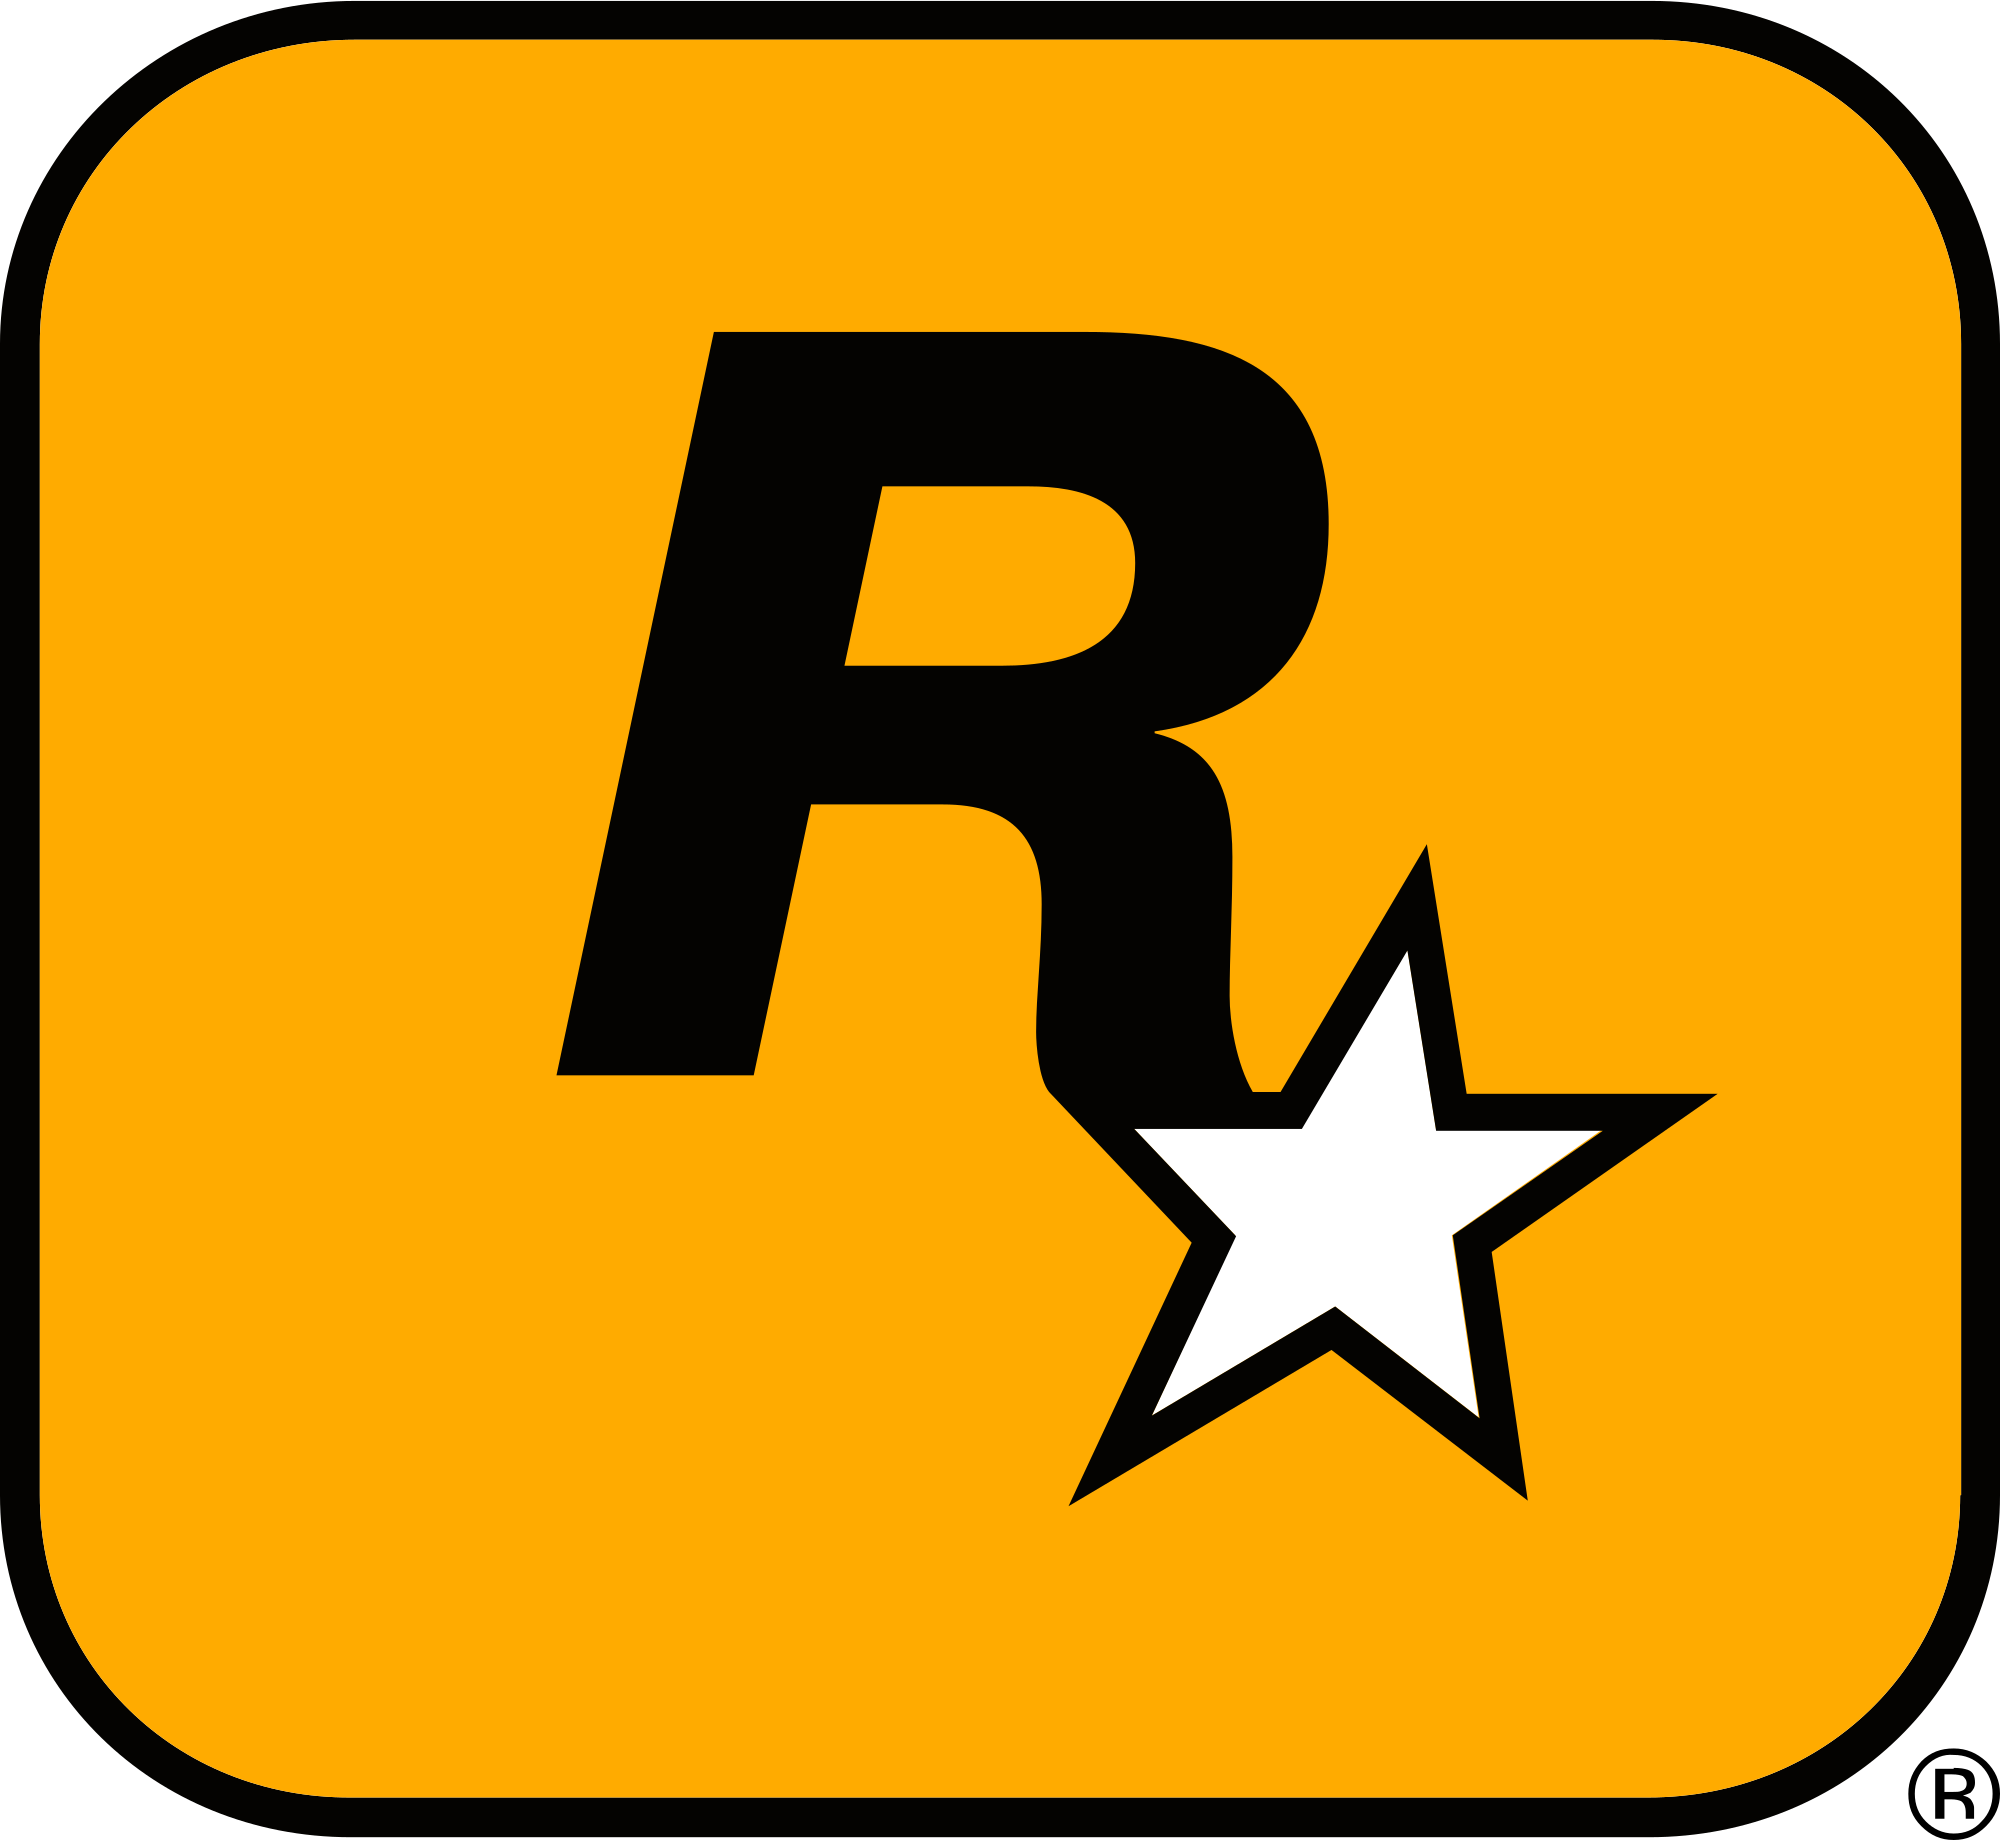 ROCKSTAR(Rockstar Games)